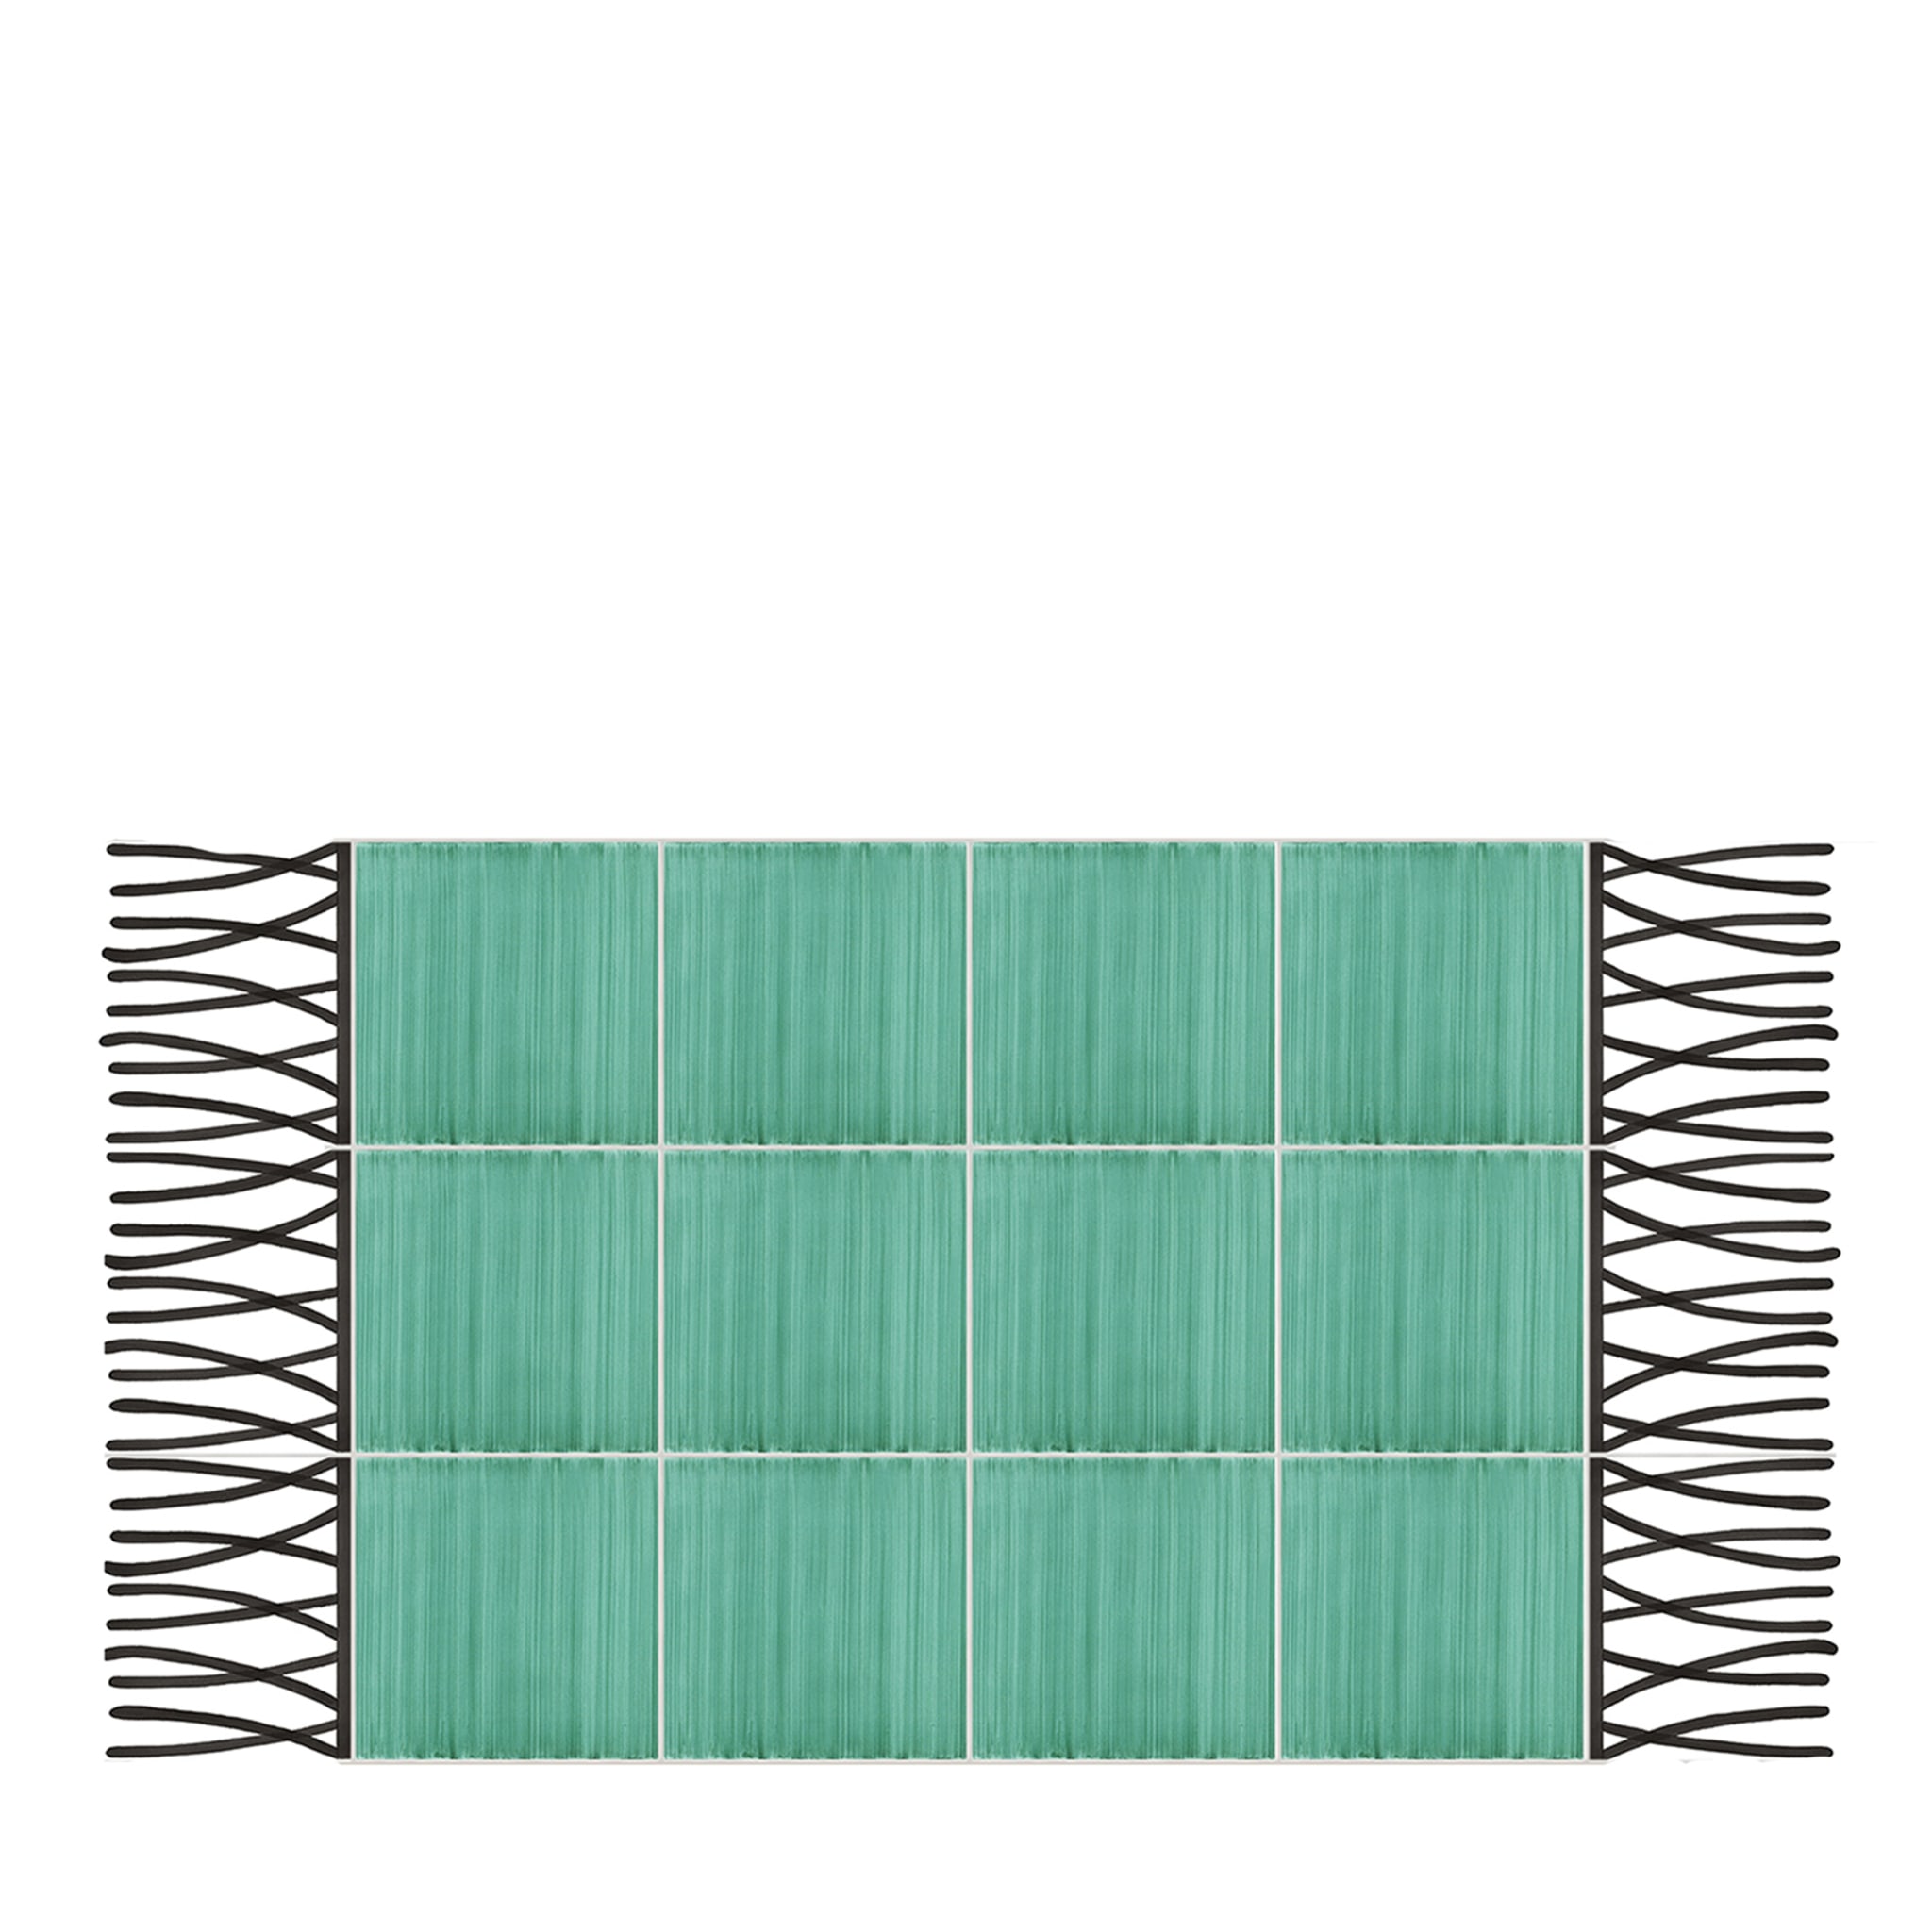 Carpet Total Green Ceramic Composition by Giuliano Andrea dell’Uva 120 X 60 - Main view